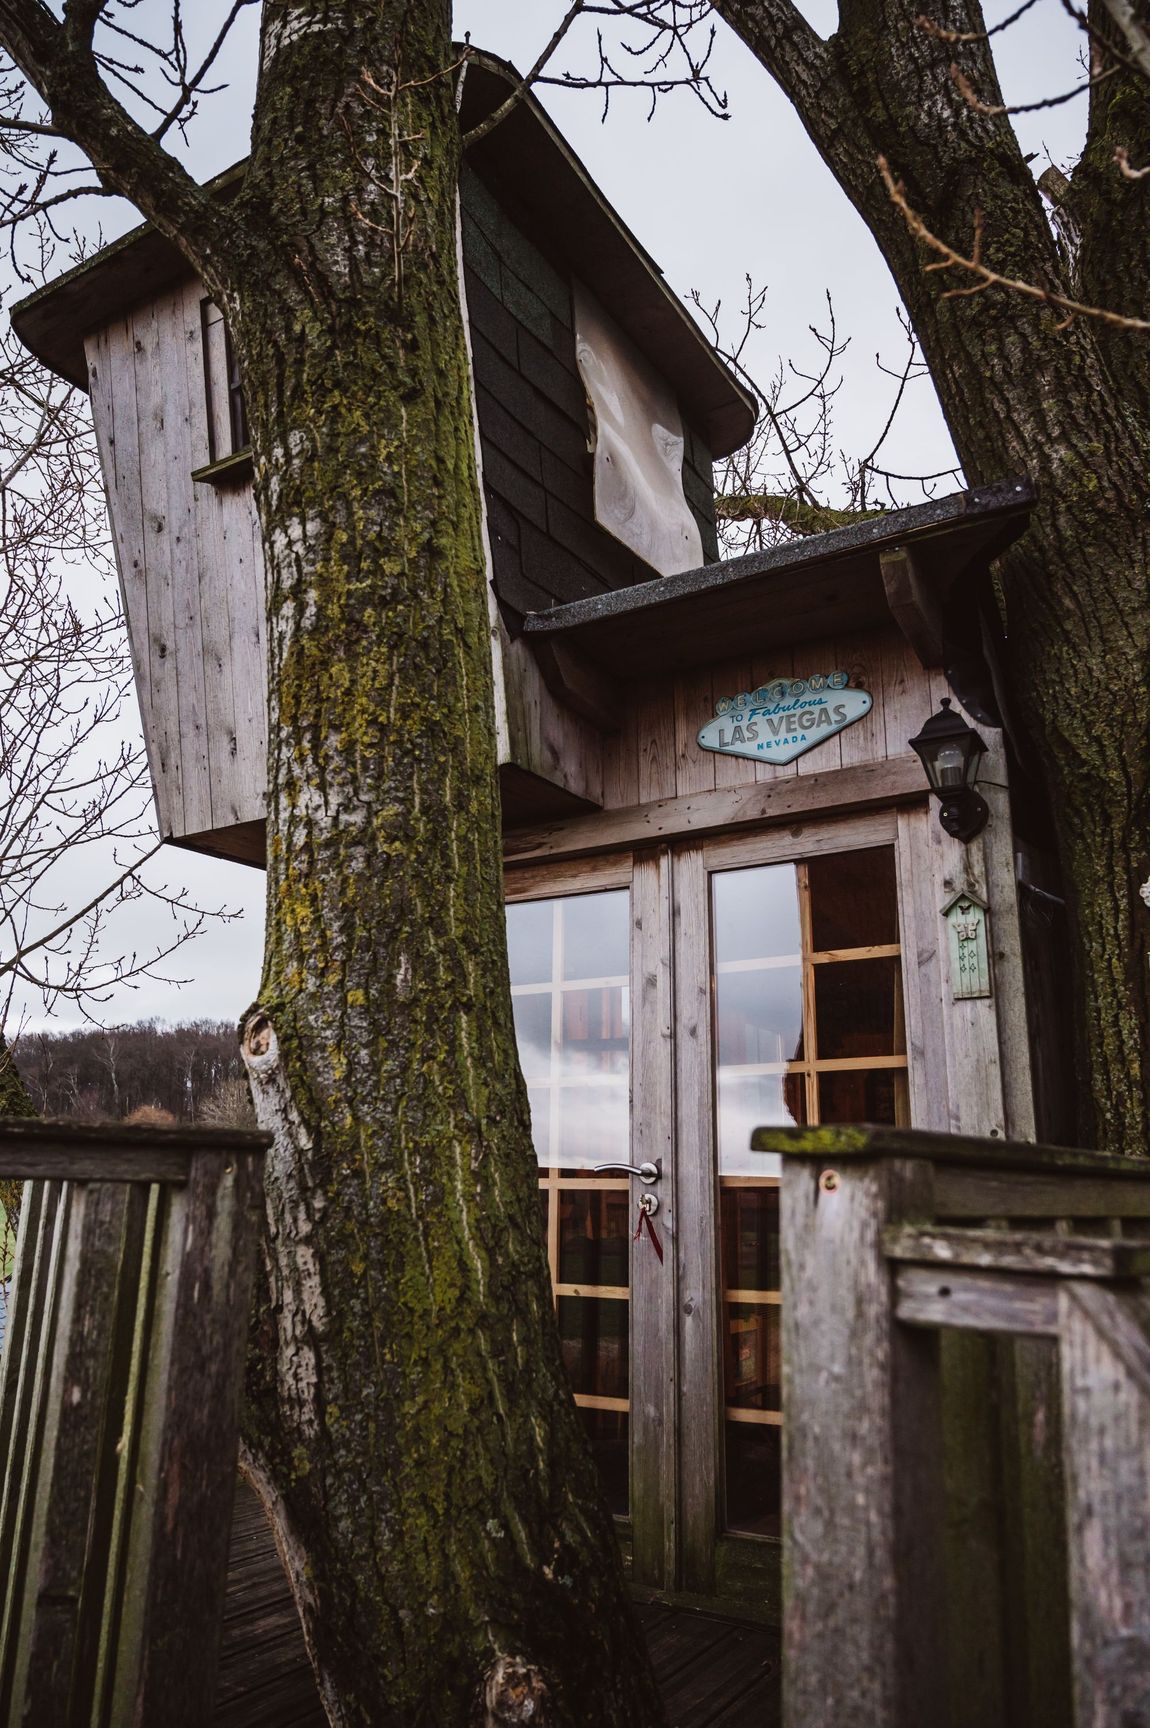 Dreamlike tree house in rural location